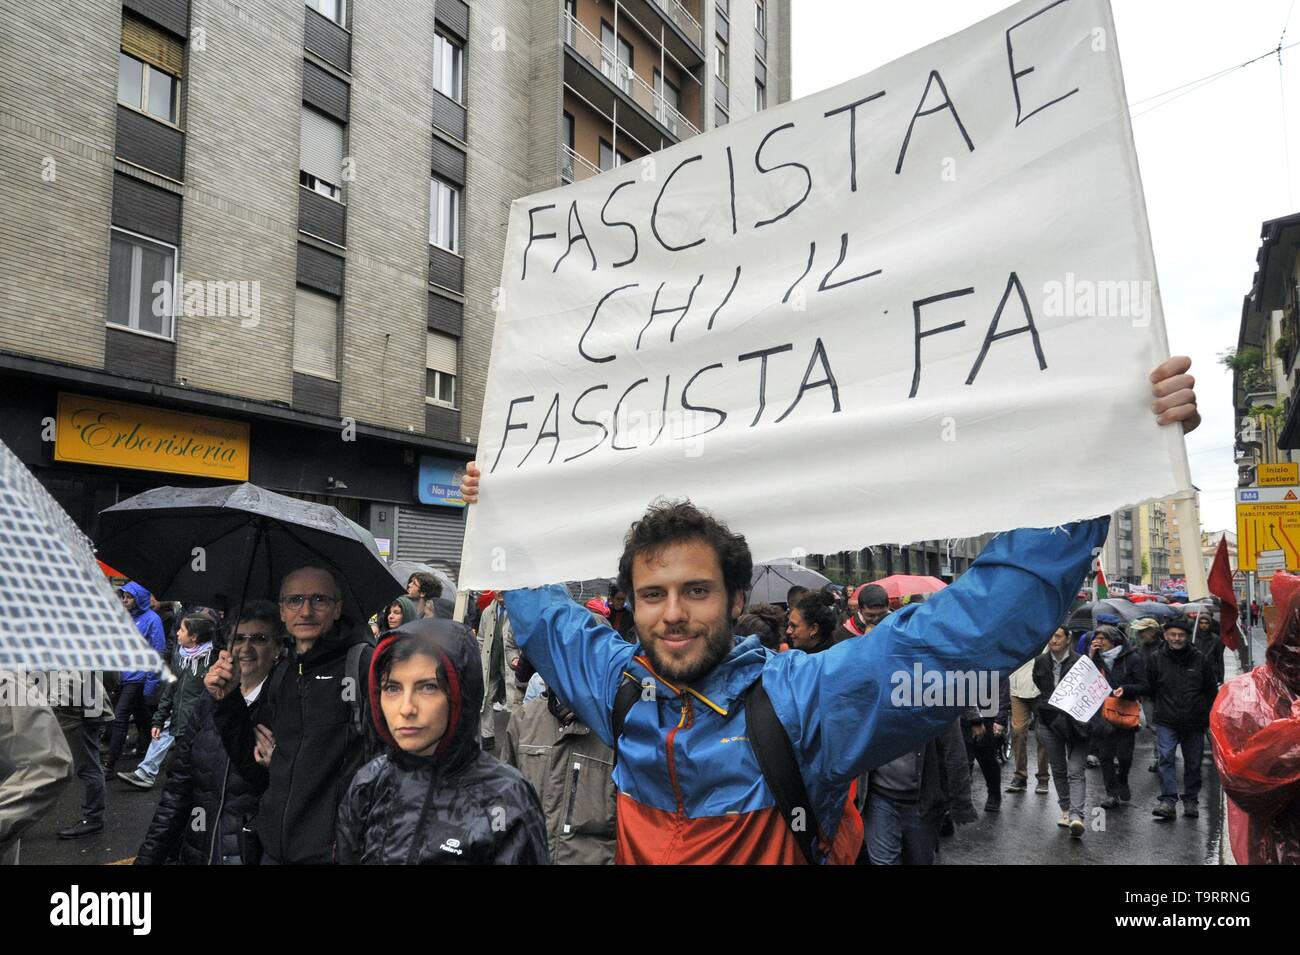 Milan, 18 mai 2019, manifestation de protestation par des groupes et organisations démocratiques contre un rassemblement électoral des souverainist et fasciste des partis européens avec la présence de Matteo Salvini, Marine Le Pen et d'autres dirigeants politiques d'extrême droite Banque D'Images